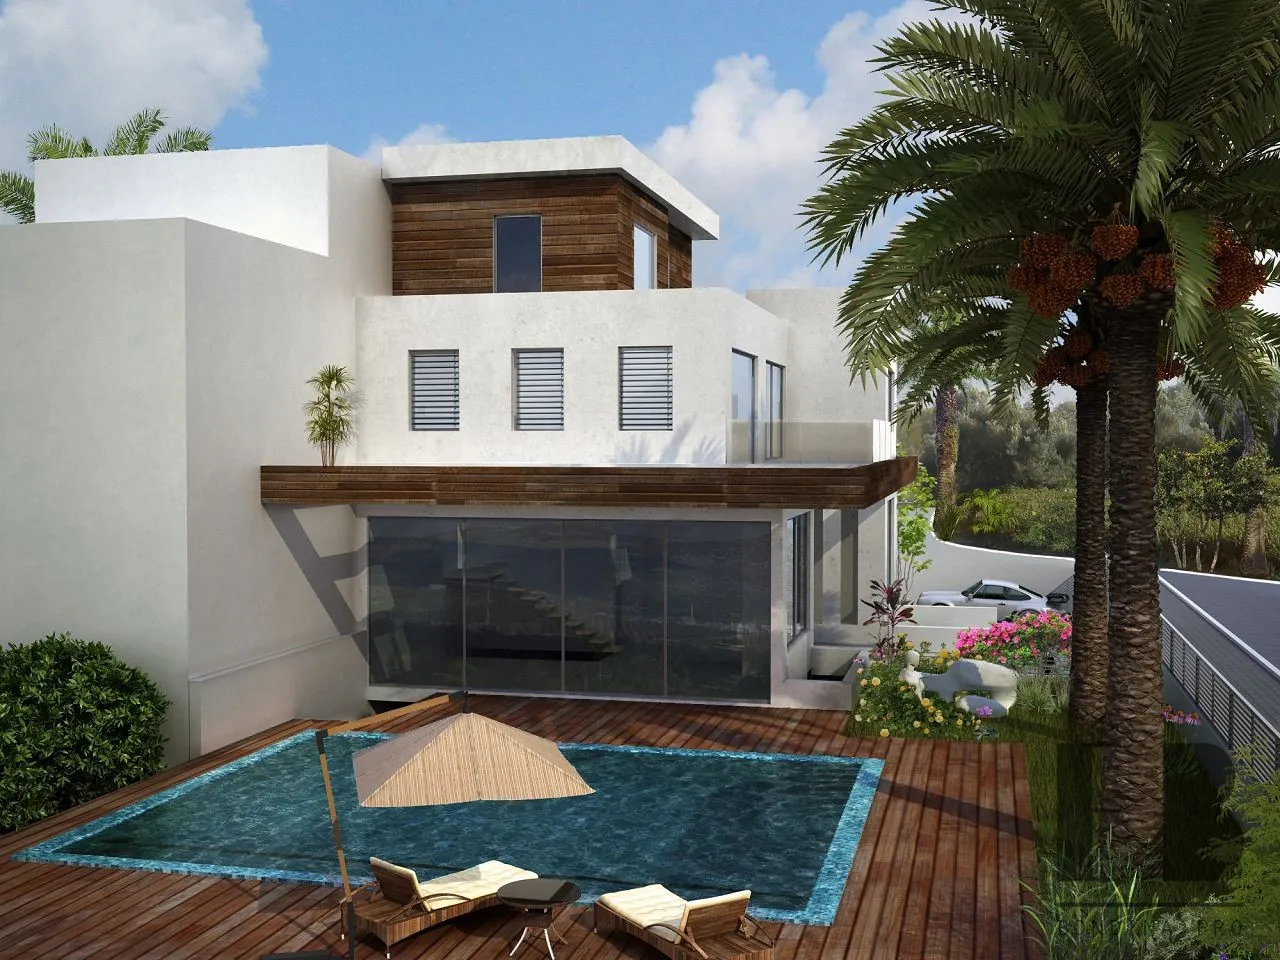 Design project of the villa